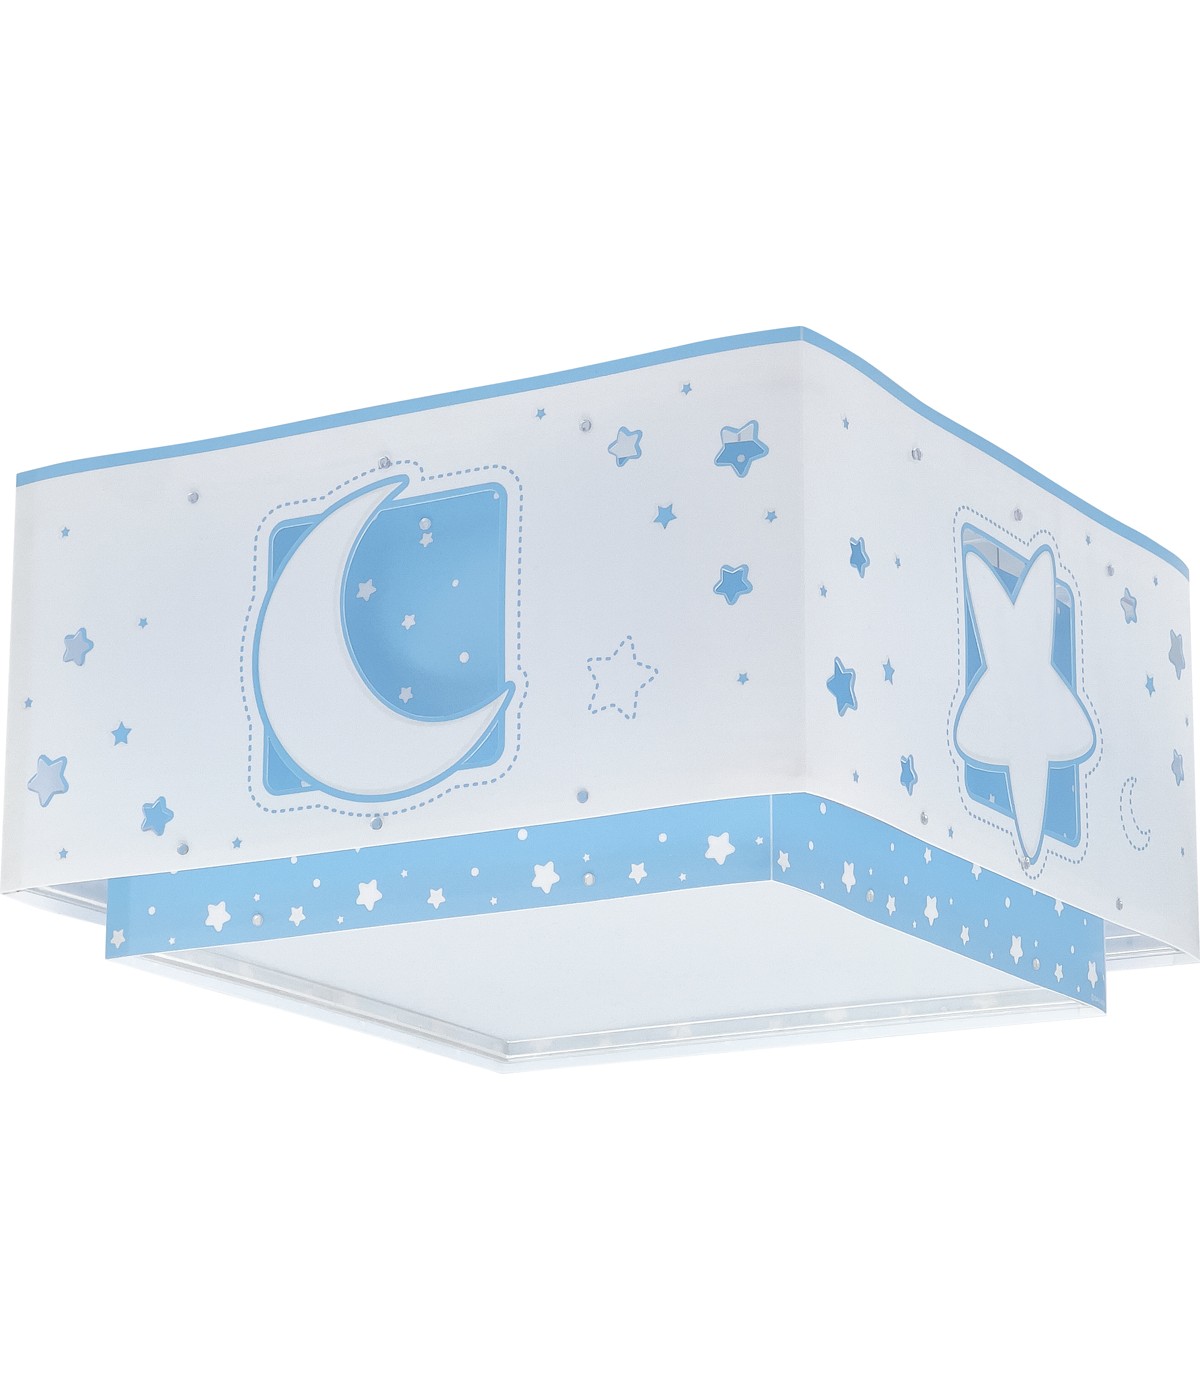 Plafon de teto infantil Moonlight azul